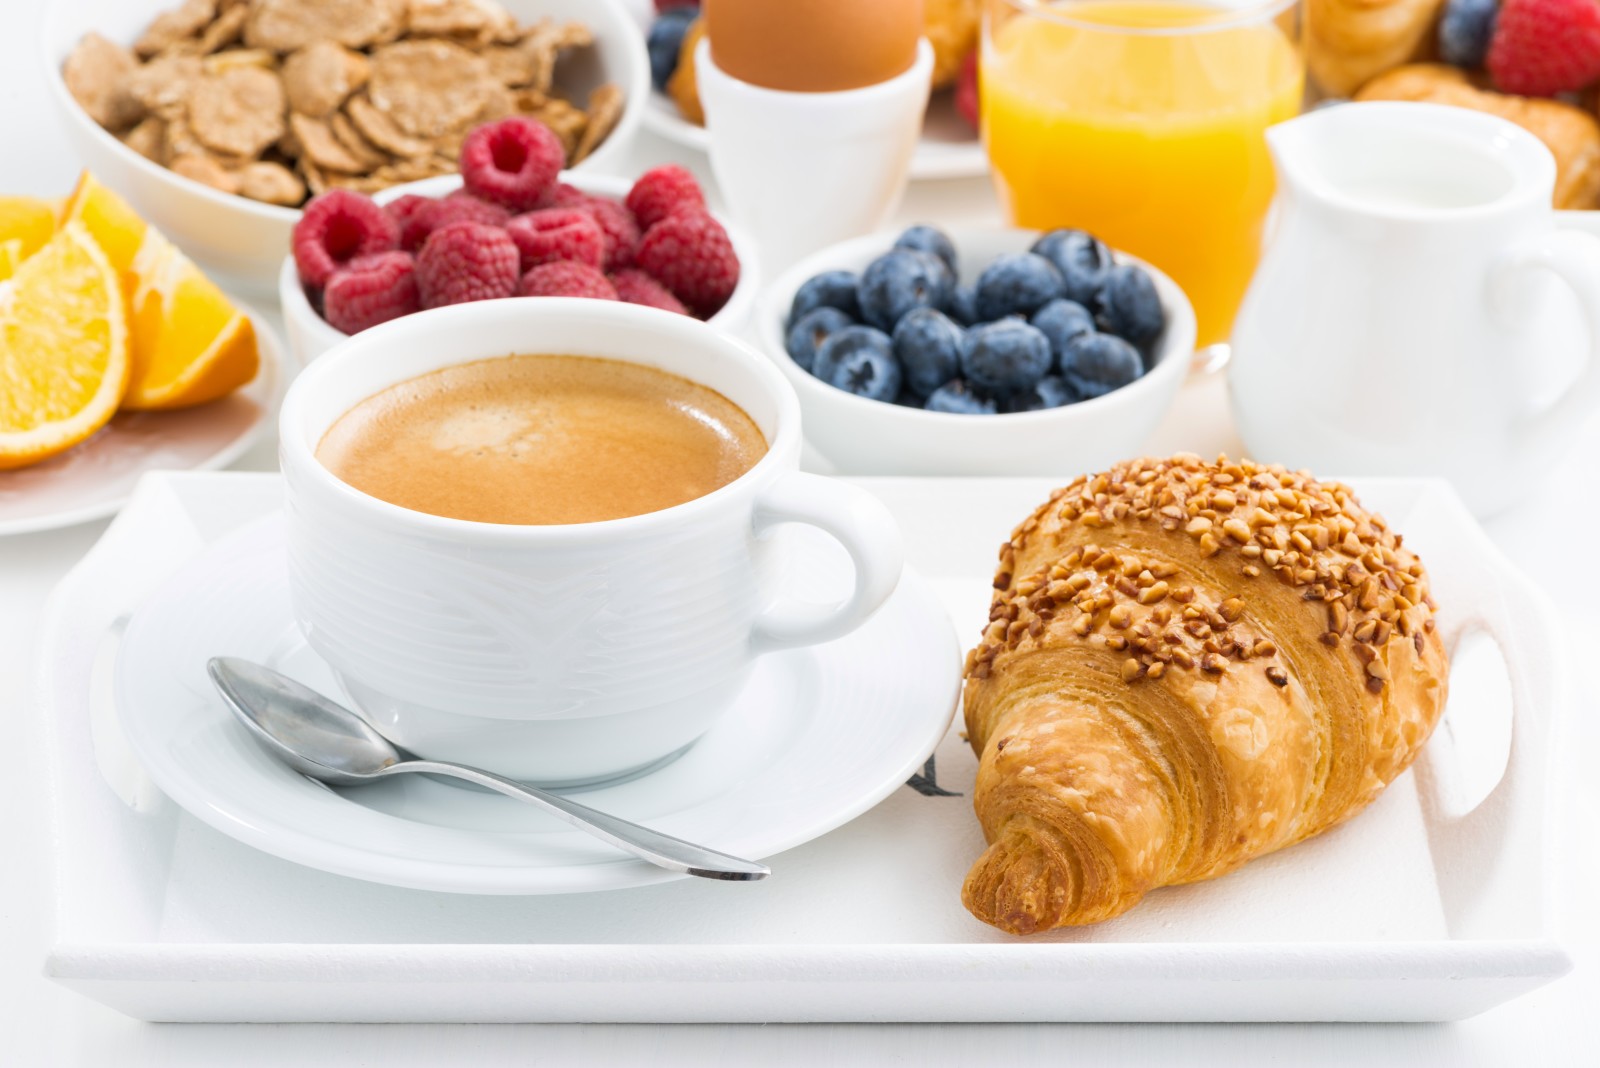 sarapan, buah beri, kopi, croissant, muesli, buah beri segar